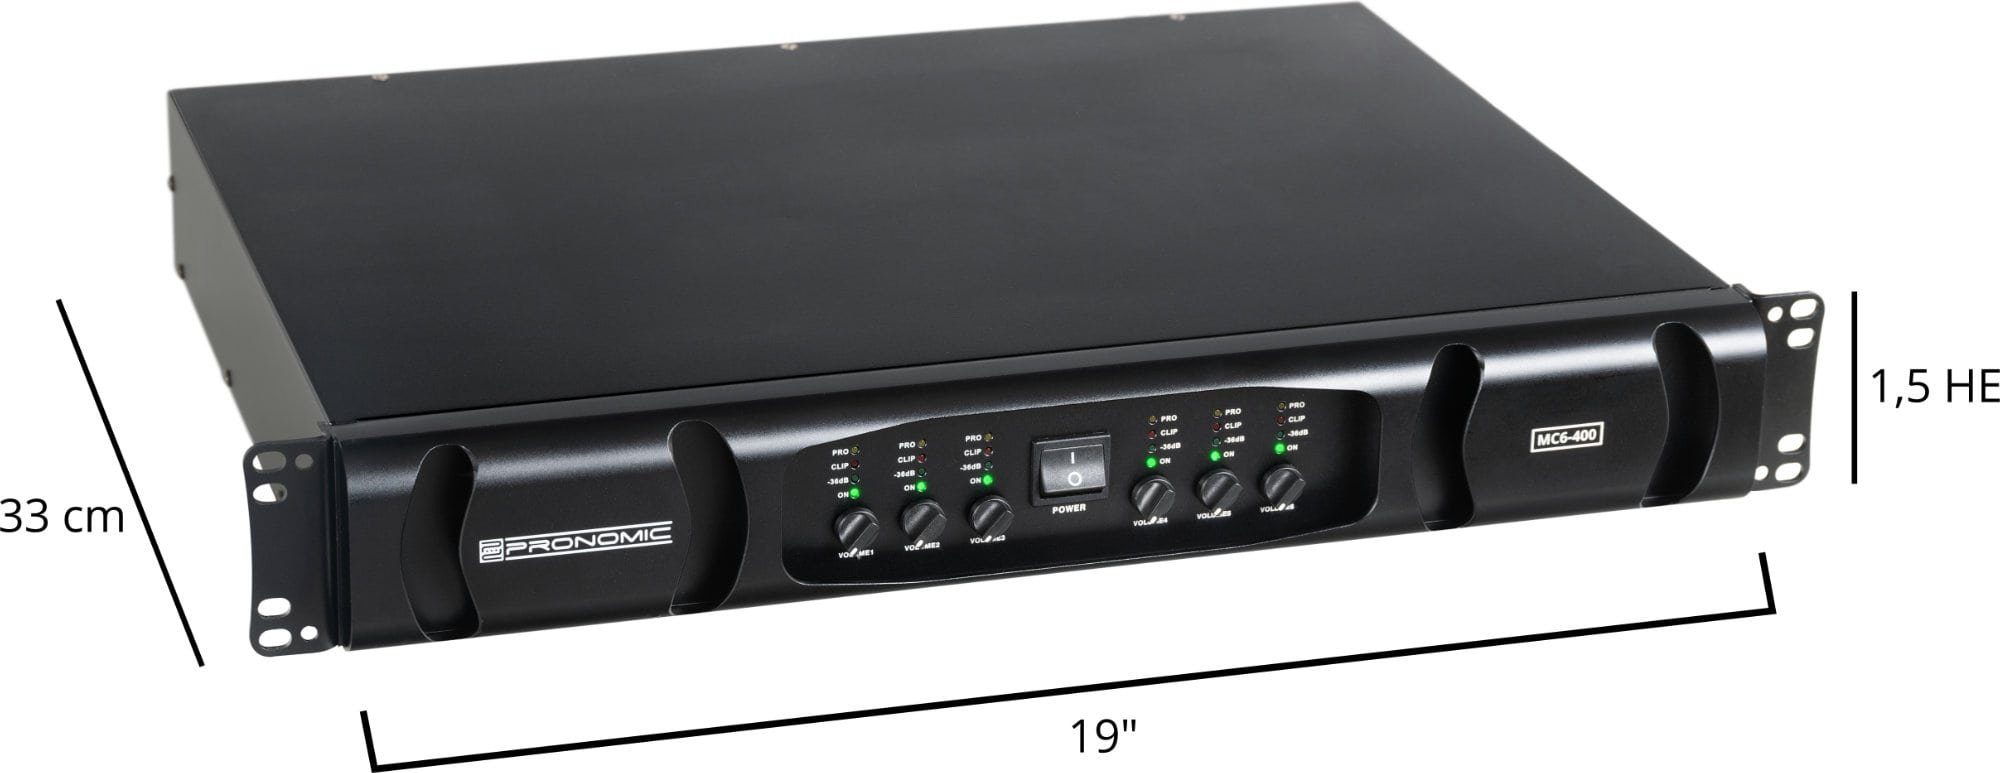 Pronomic MC6-400 Endstufe W, mit 3600 Schaltung Grenzfrequenz) 6, Audioverstärker Watt Endstufe Kanäle: einstellbarer 6x & 600 (Anzahl flexibler